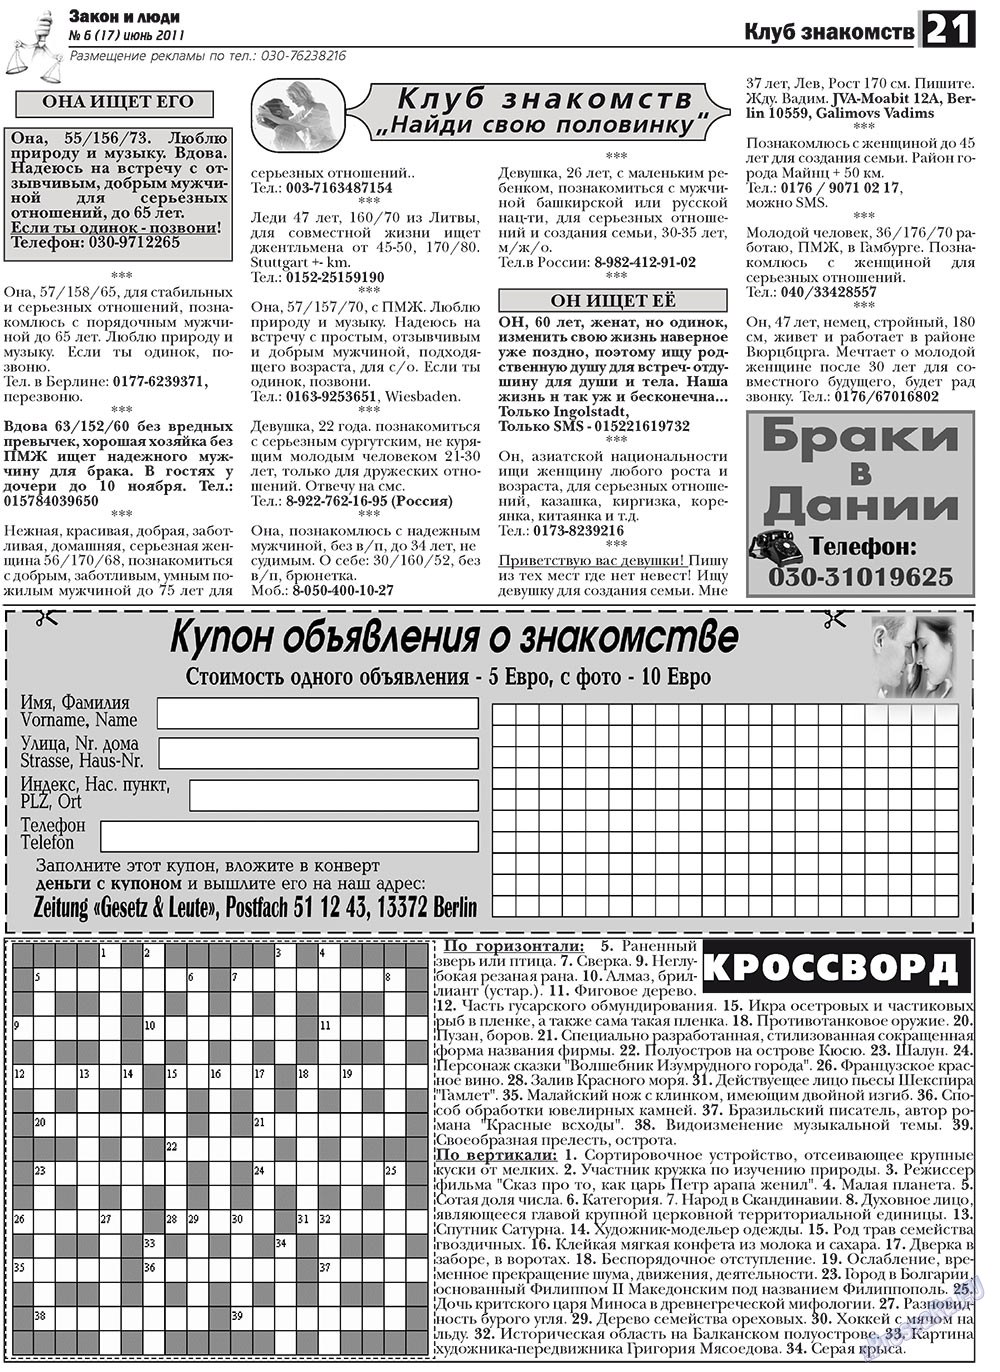 Закон и люди, газета. 2011 №6 стр.21